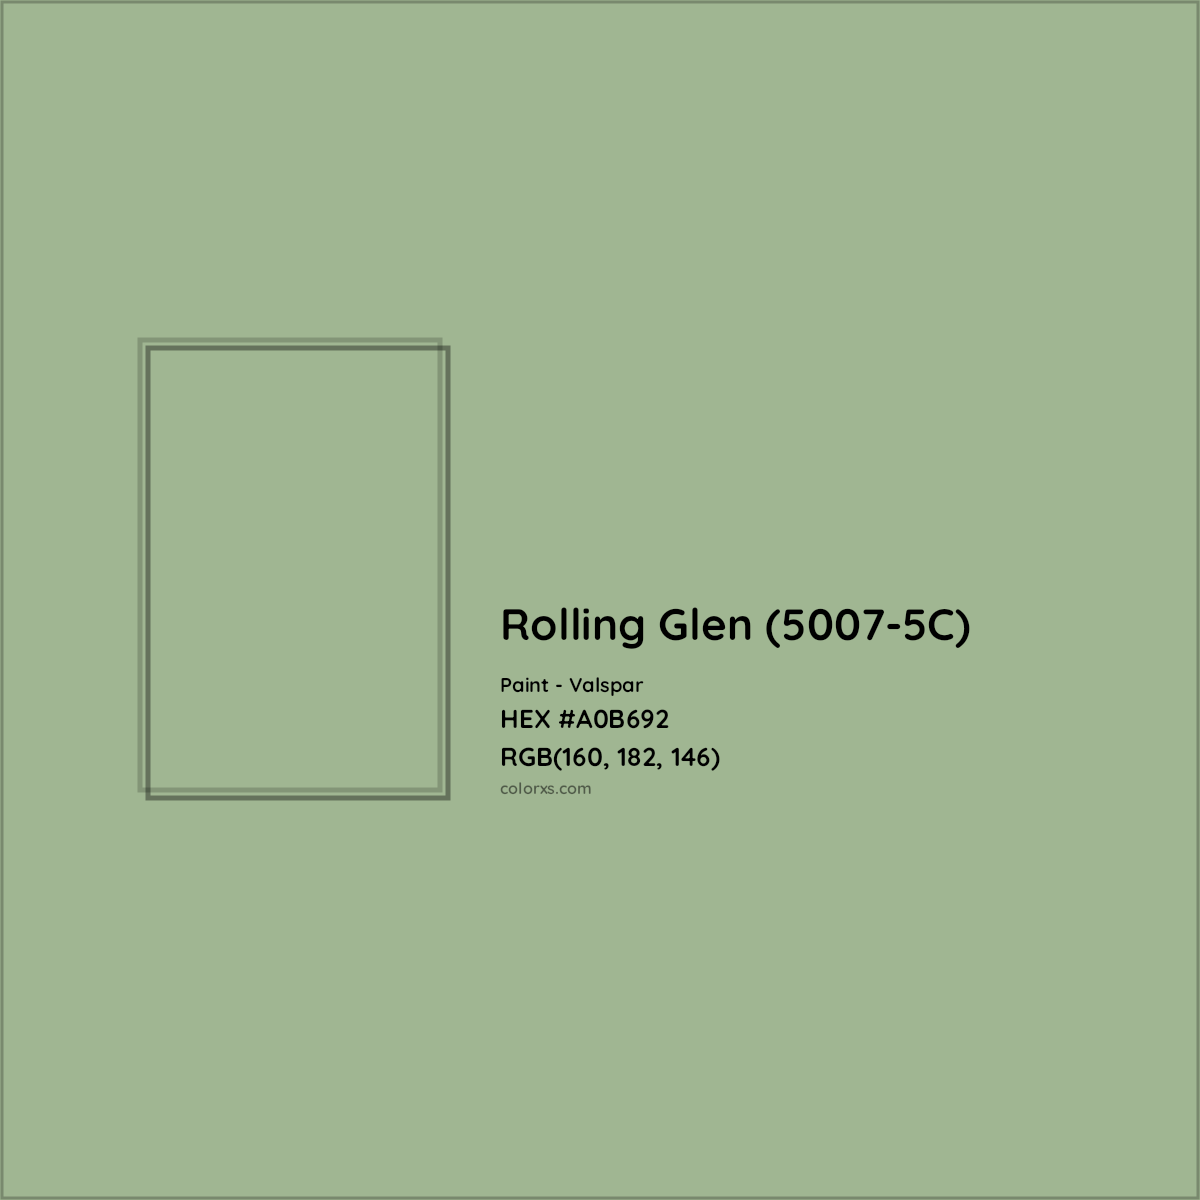 HEX #A0B692 Rolling Glen (5007-5C) Paint Valspar - Color Code